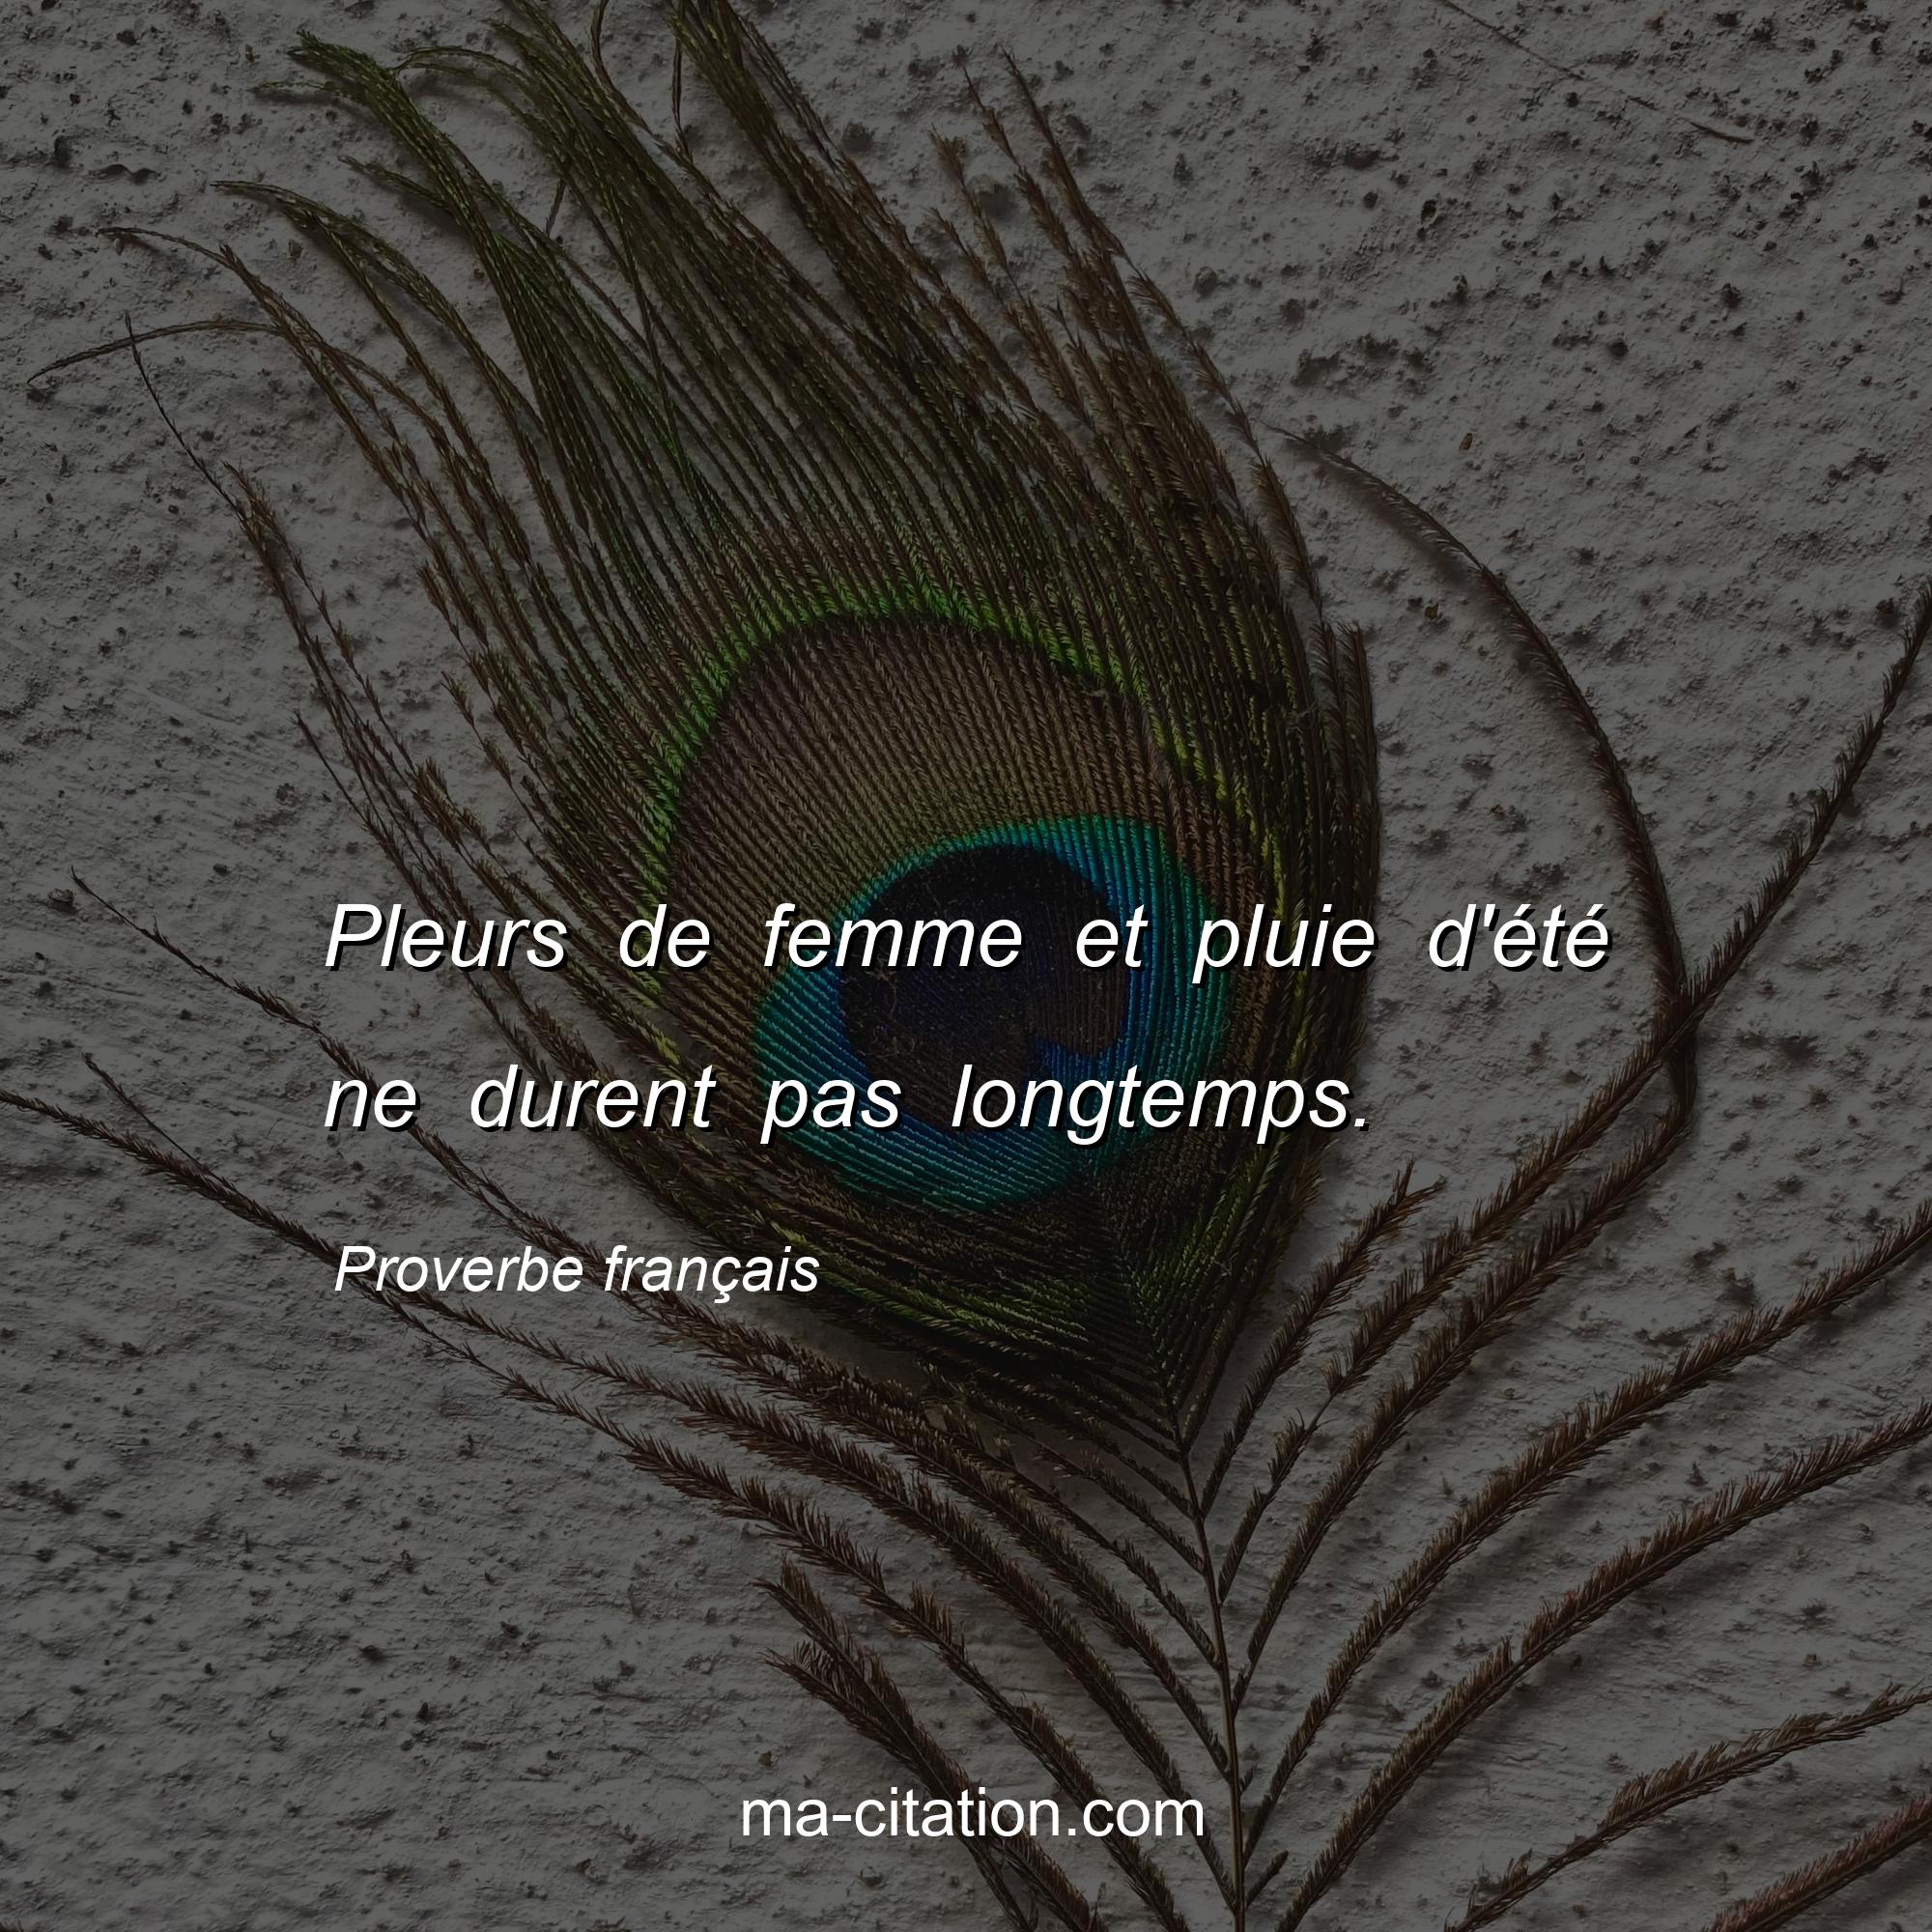 Proverbe français : Pleurs de femme et pluie d'été ne durent pas longtemps.